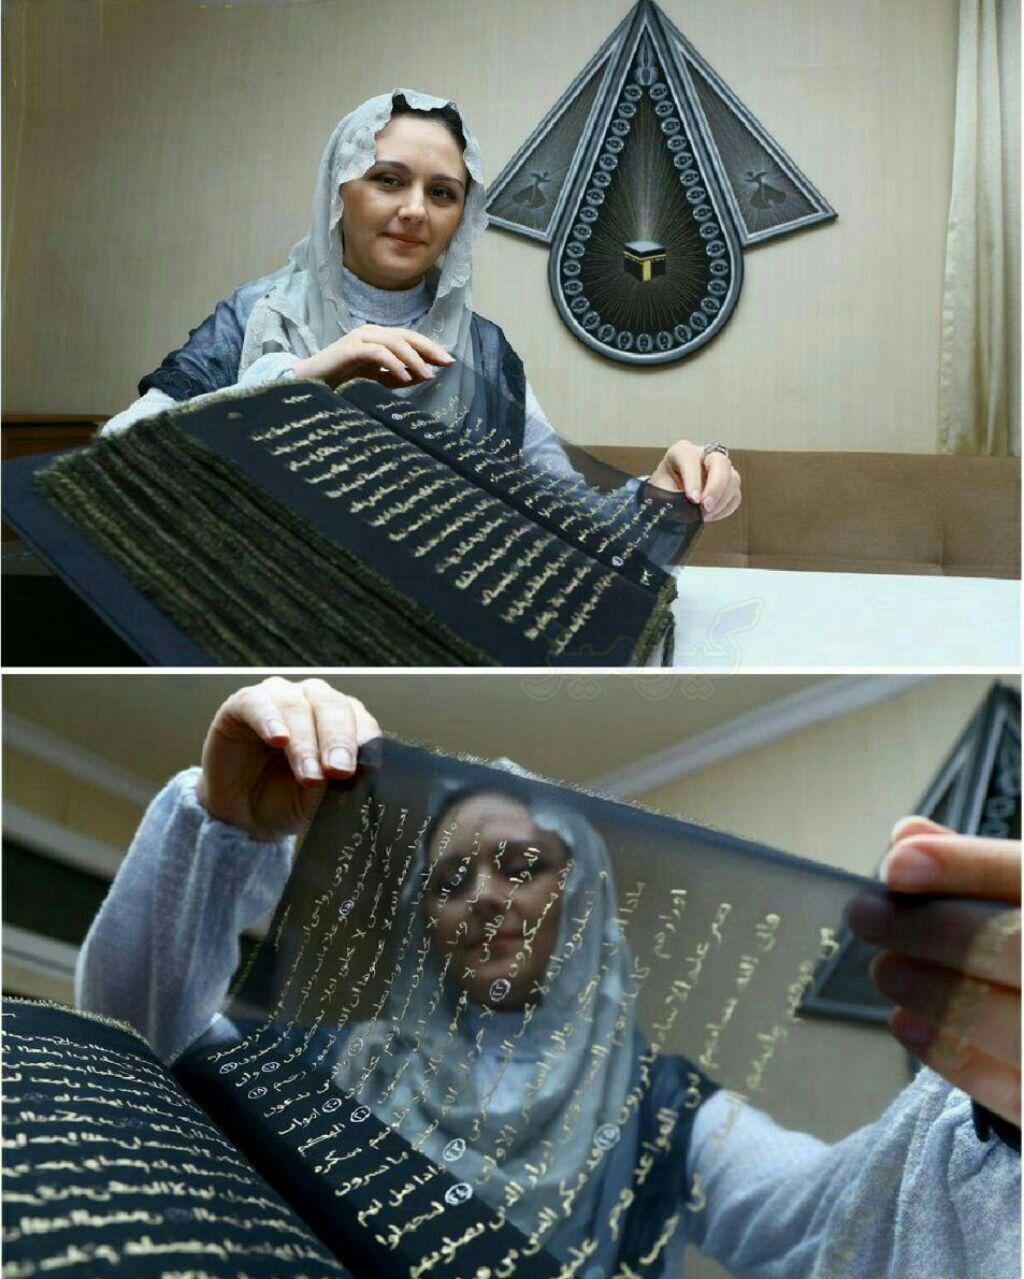  نقش قرآن با نخى از جنس طلا روى حرير